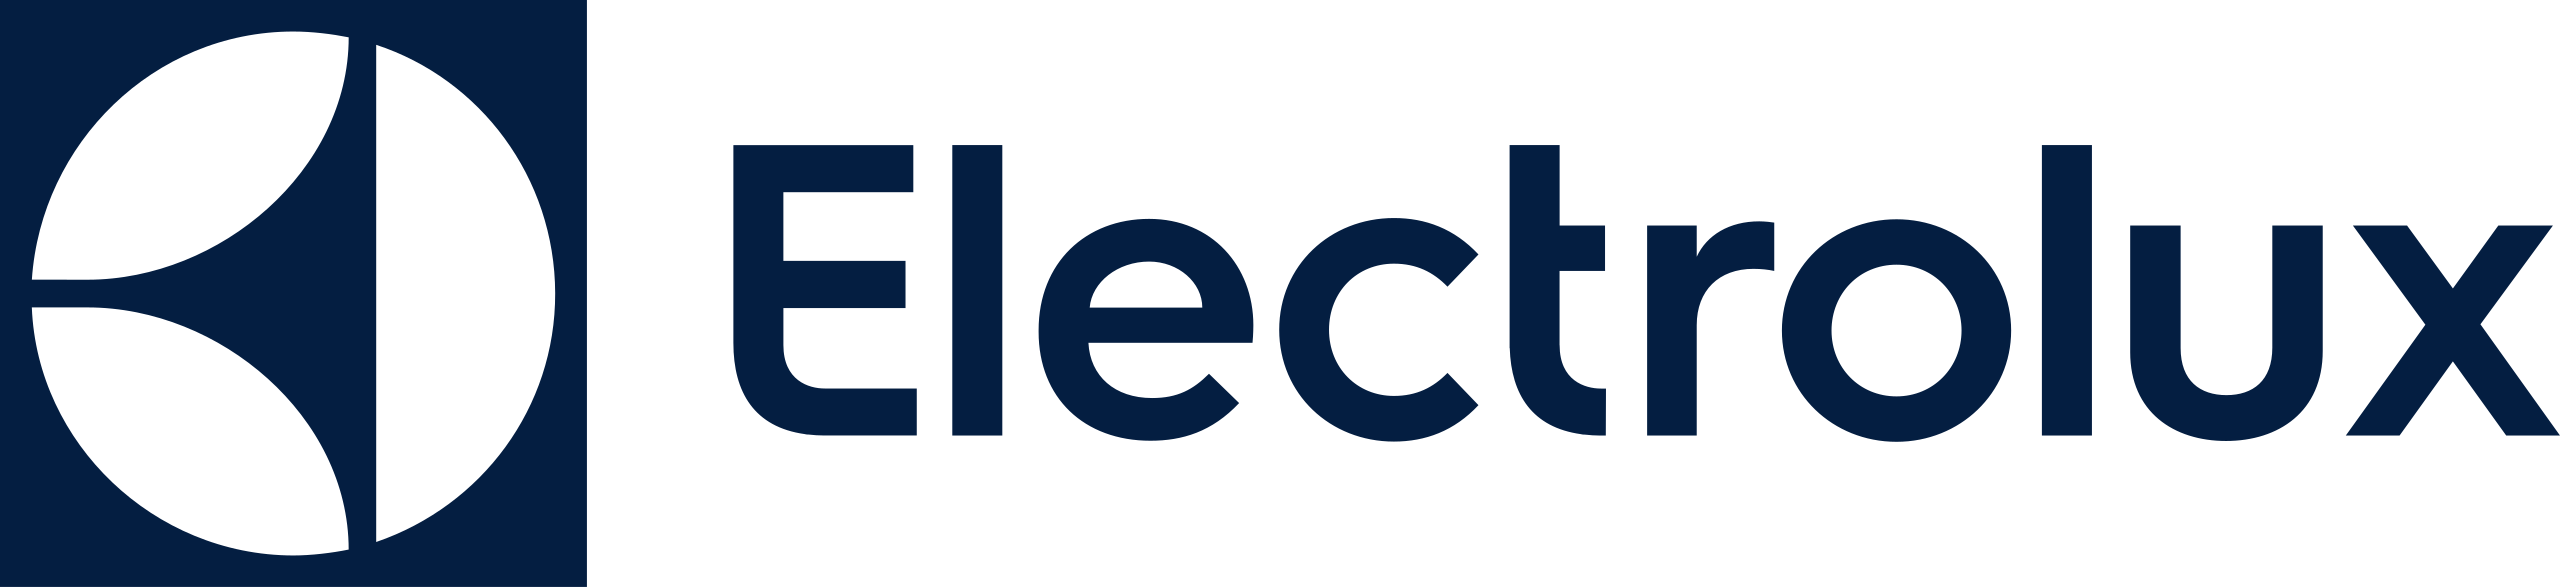 Electrolux blue logo